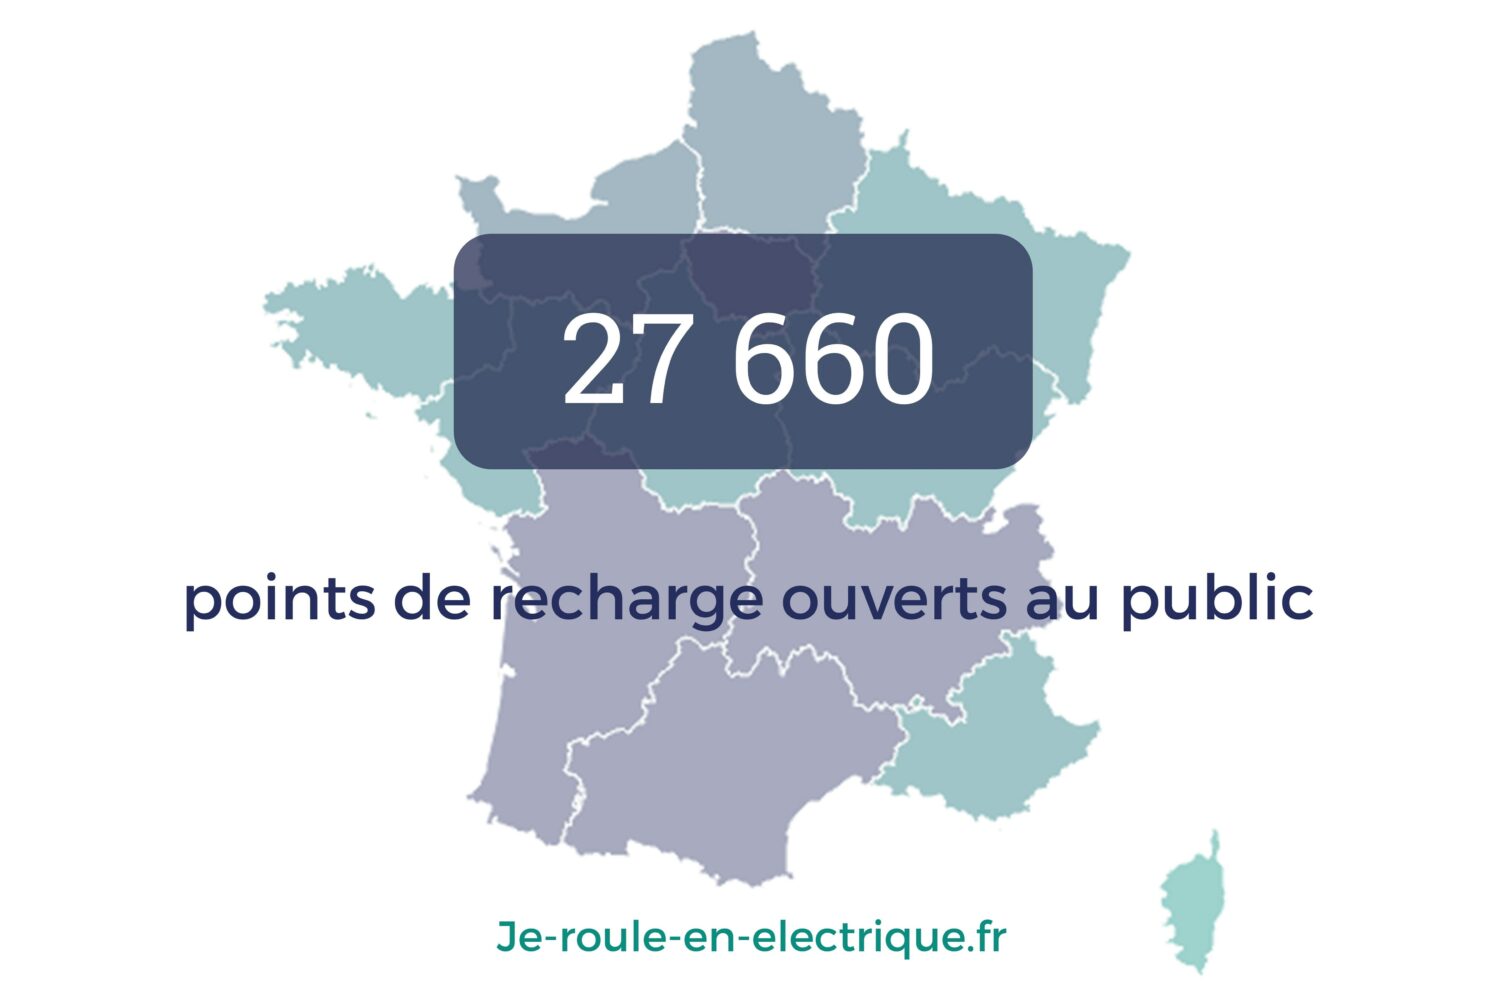 2019 - Renault partner of the portal je-roule-en-electrique.fr